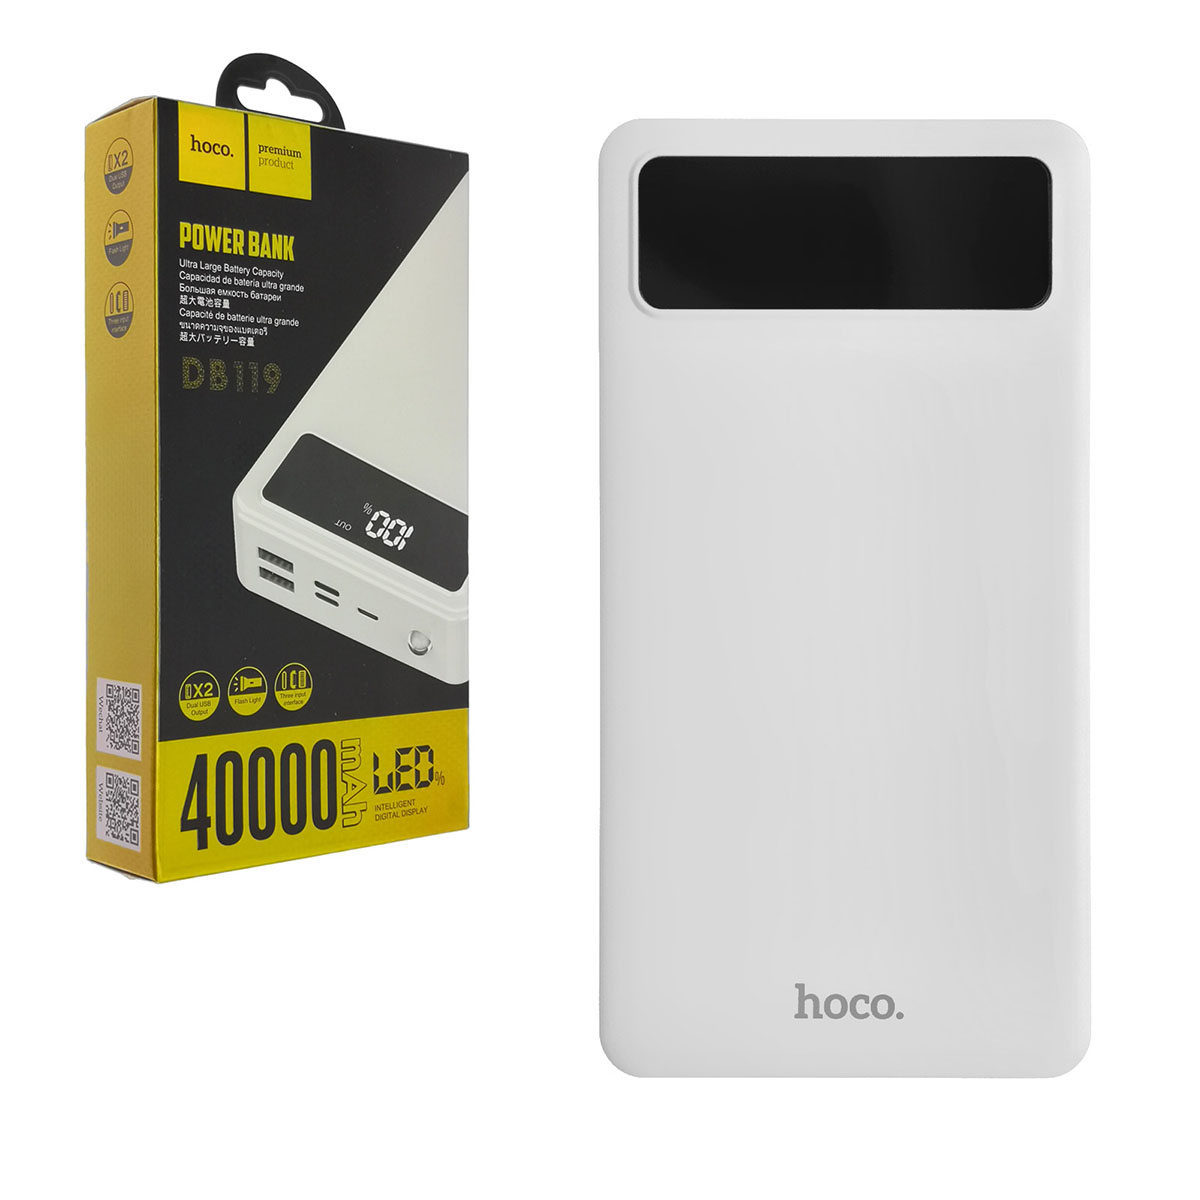 Внешний аккумулятор, Power Bank HOCO DB119 Cool Enormous, 40000 mAh, фонарь, цвет белый.